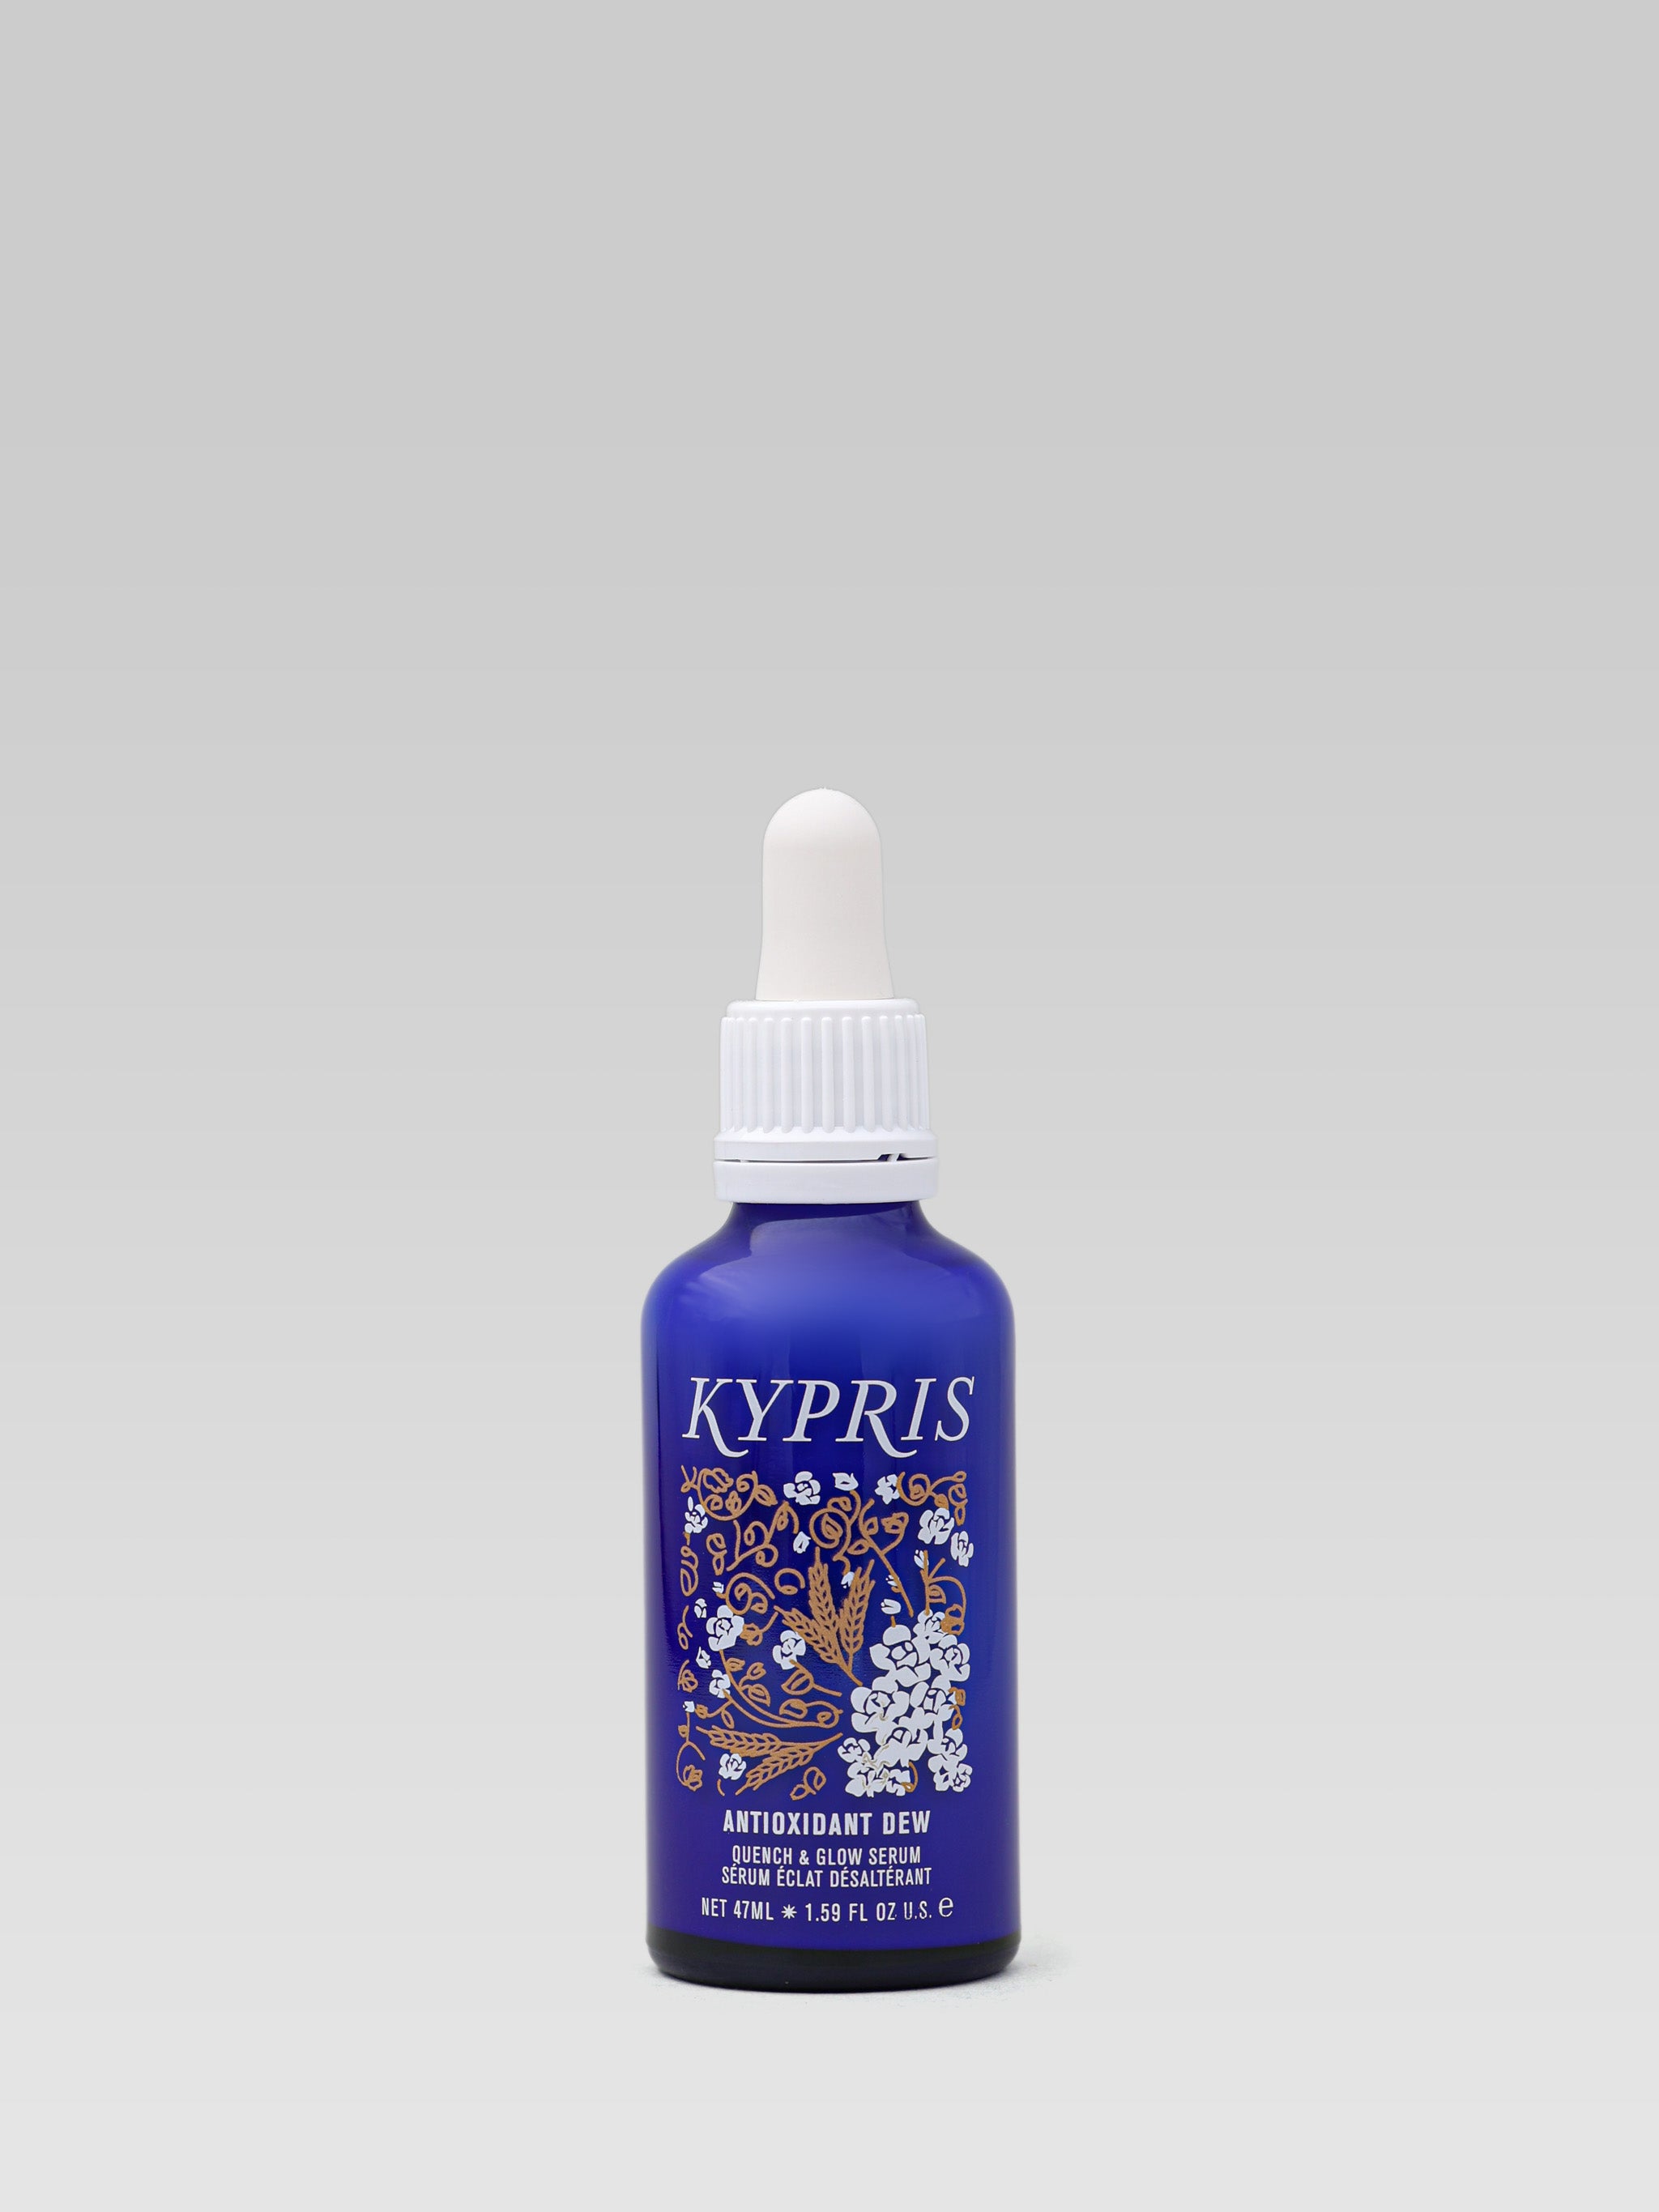 KYPRIS Antioxidant Dew Serum product shot 